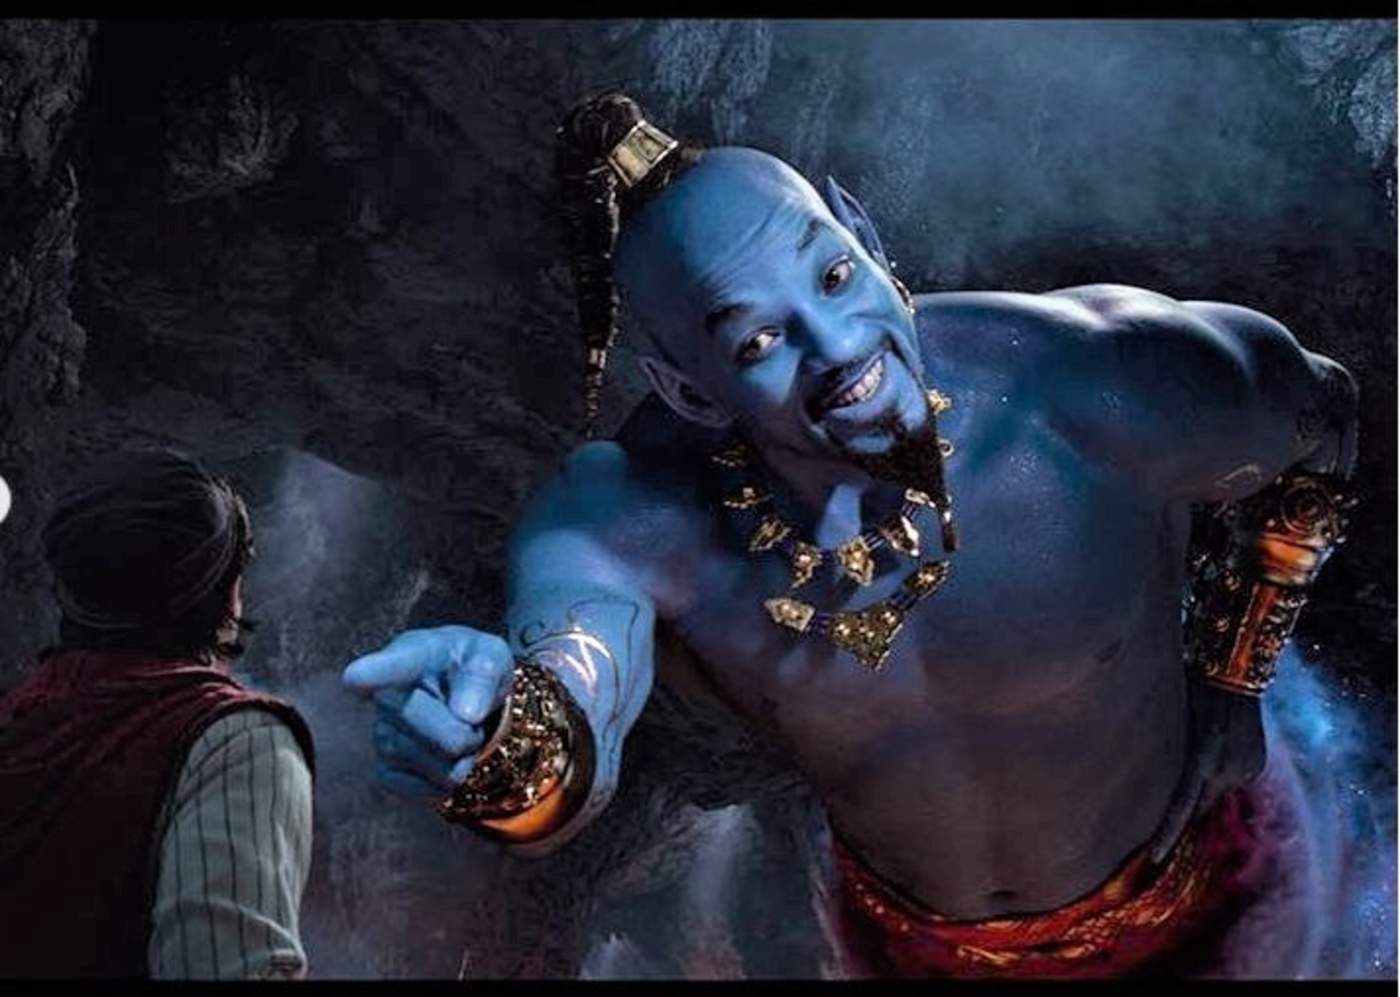 El actor Will Smith será quien de vida al personaje de 'El Genio' en esta nueva producción live-action de Aladdin. (ESPECIAL)